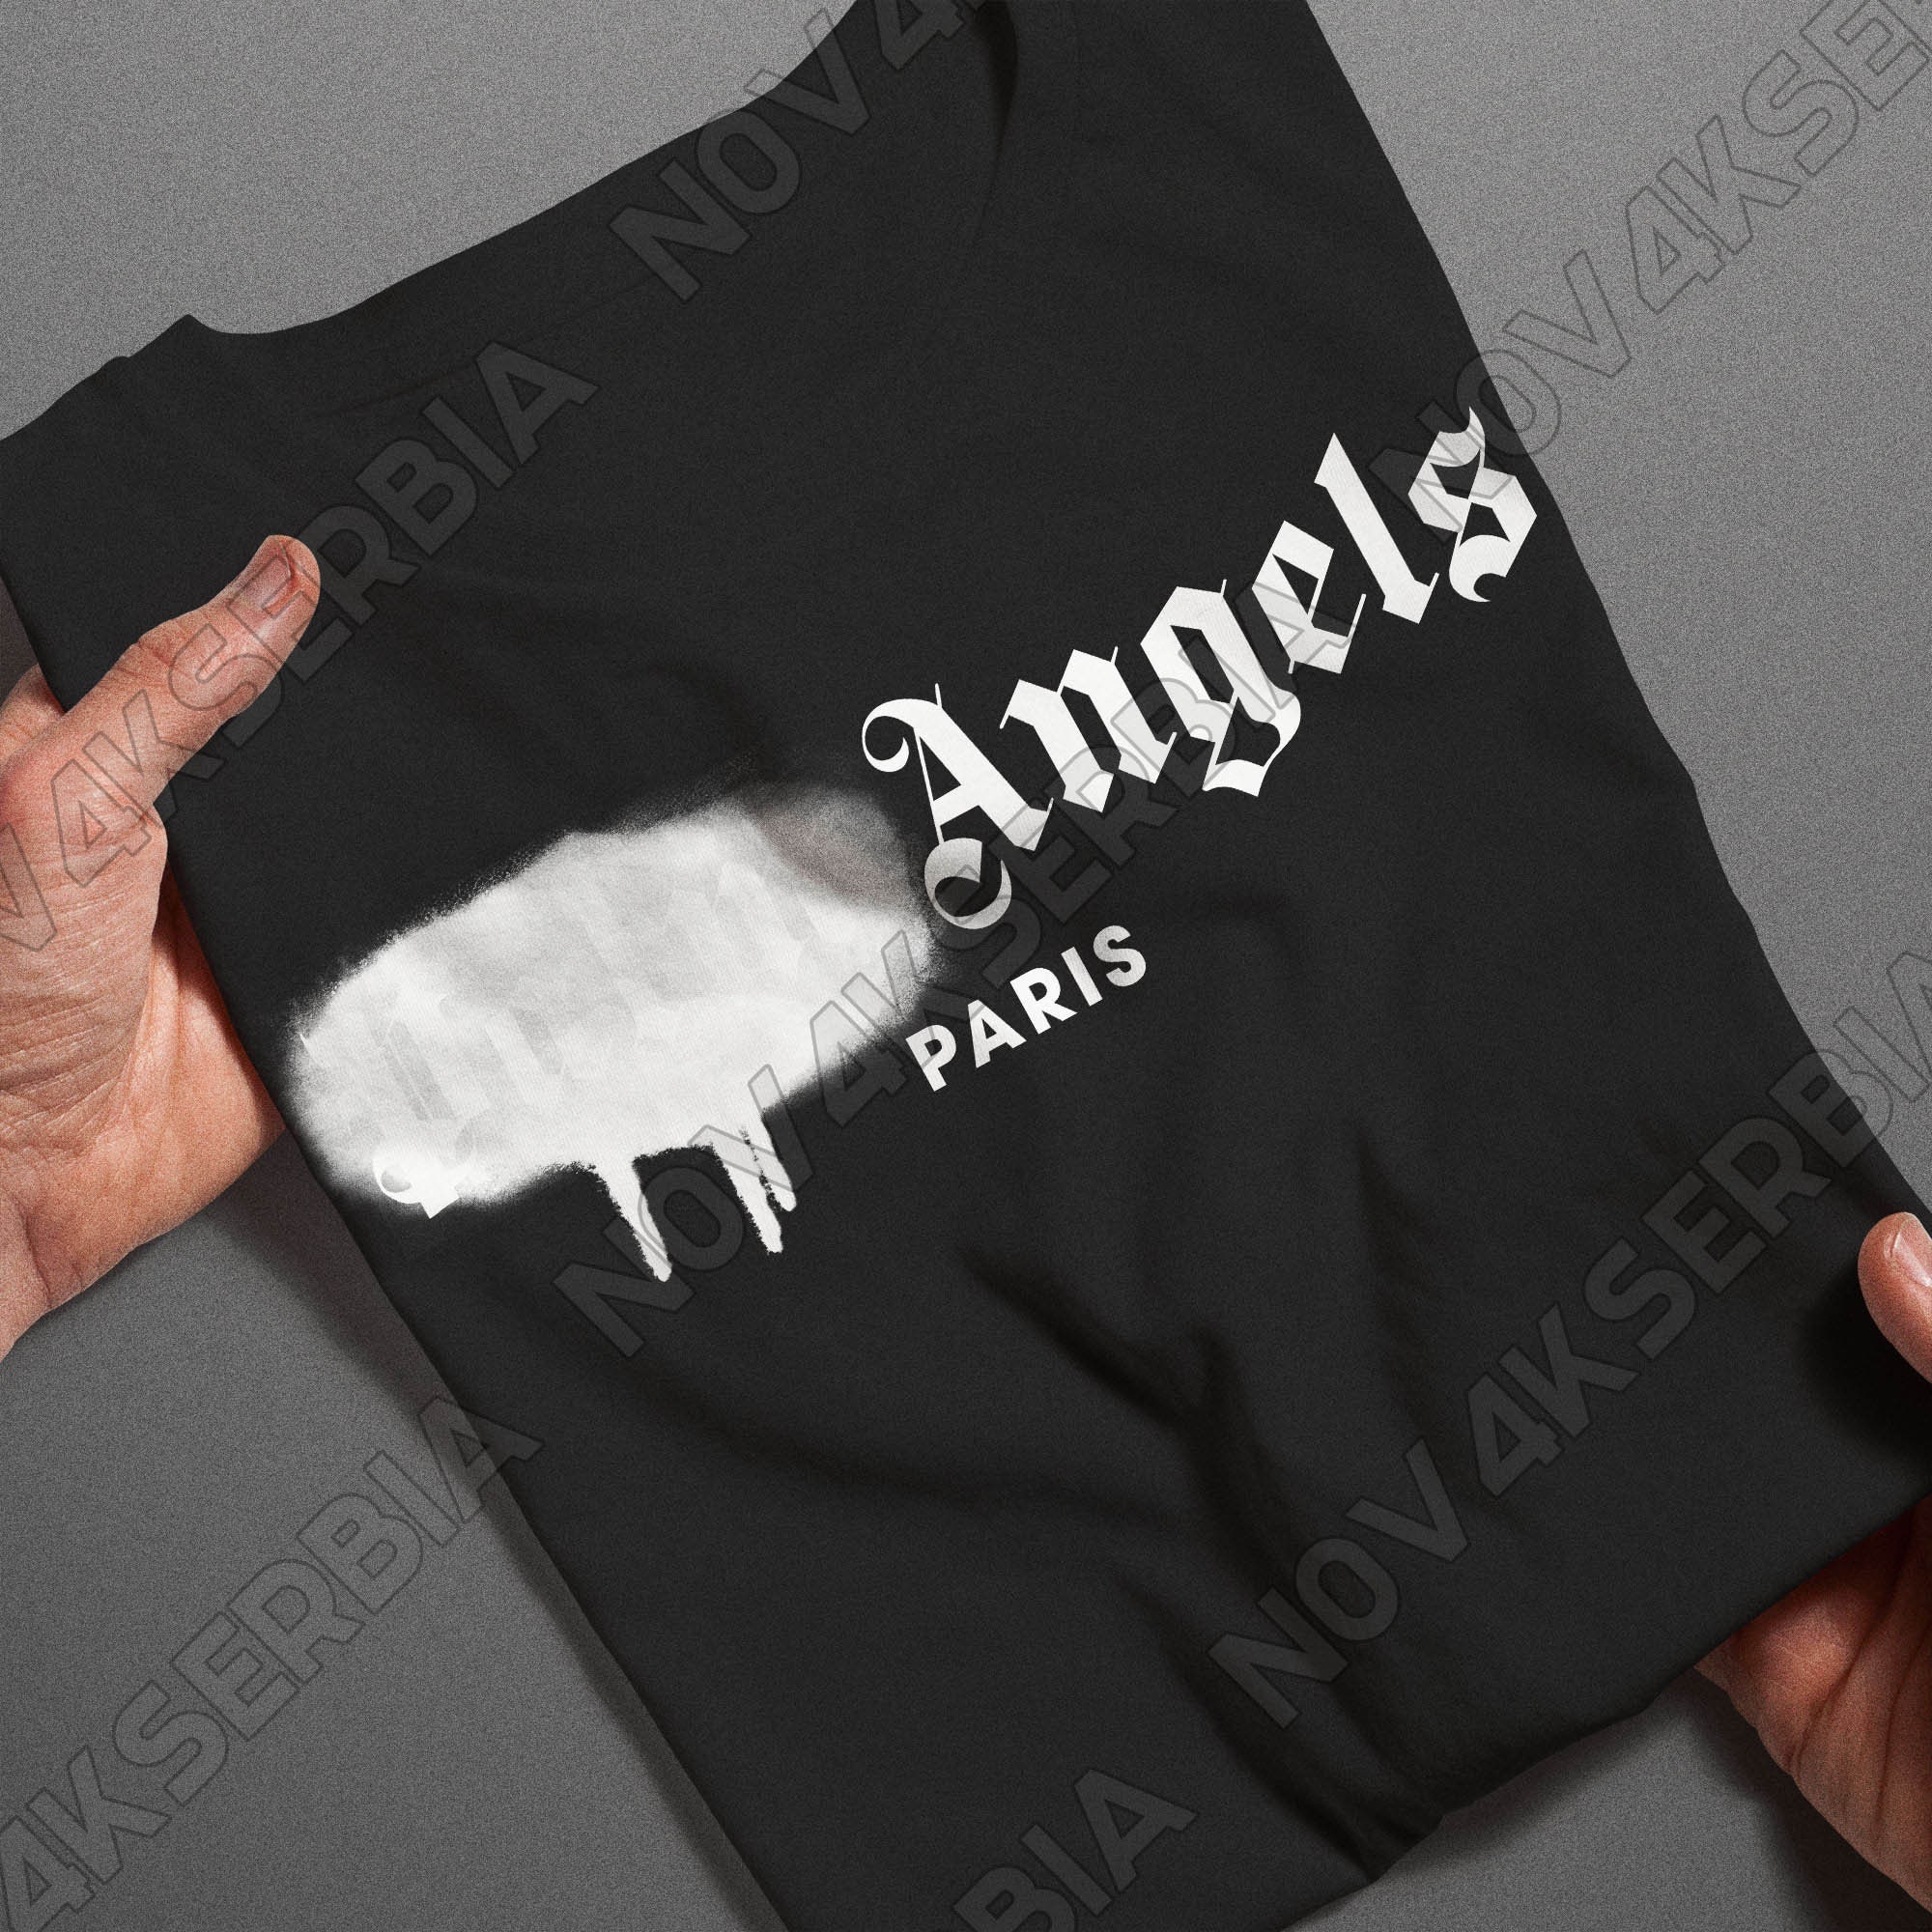 Palm Angels Paris Unisex T Shirt 